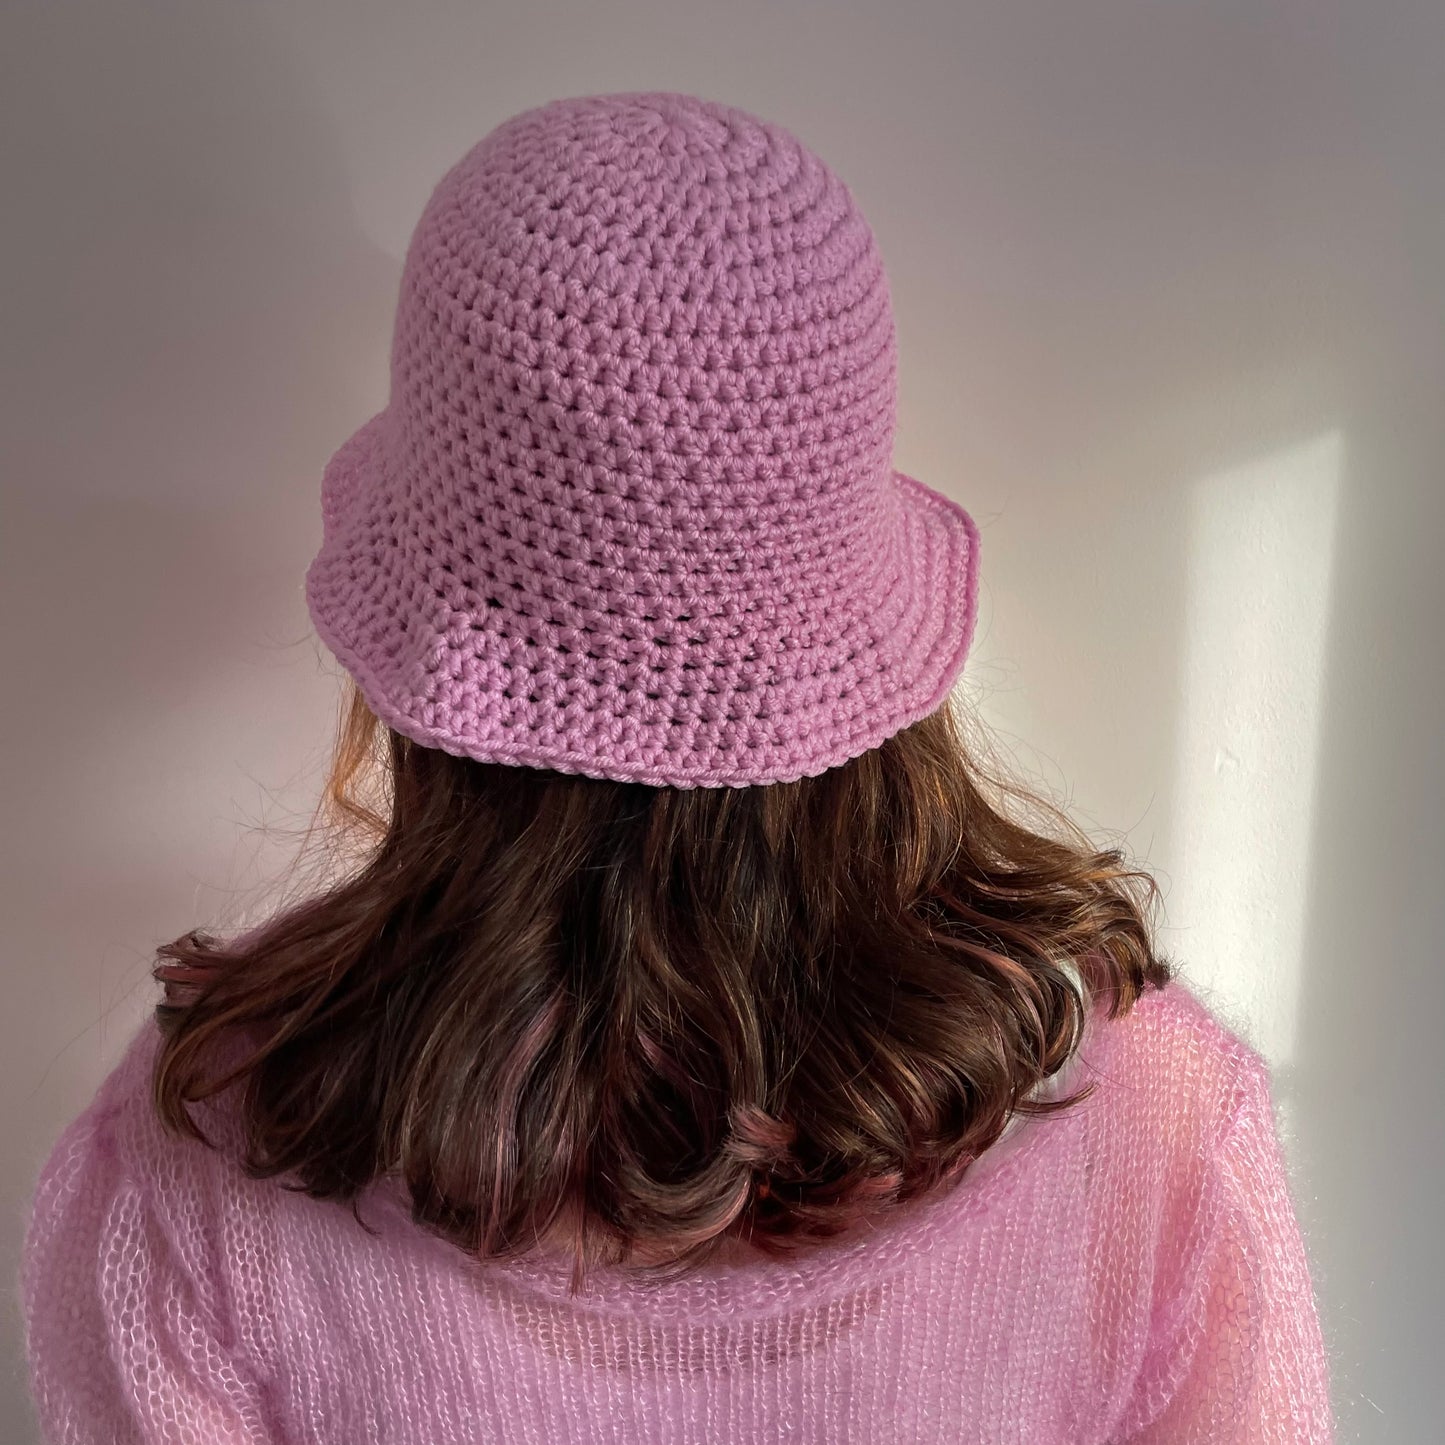 Handmade crochet bucket hat in baby pink